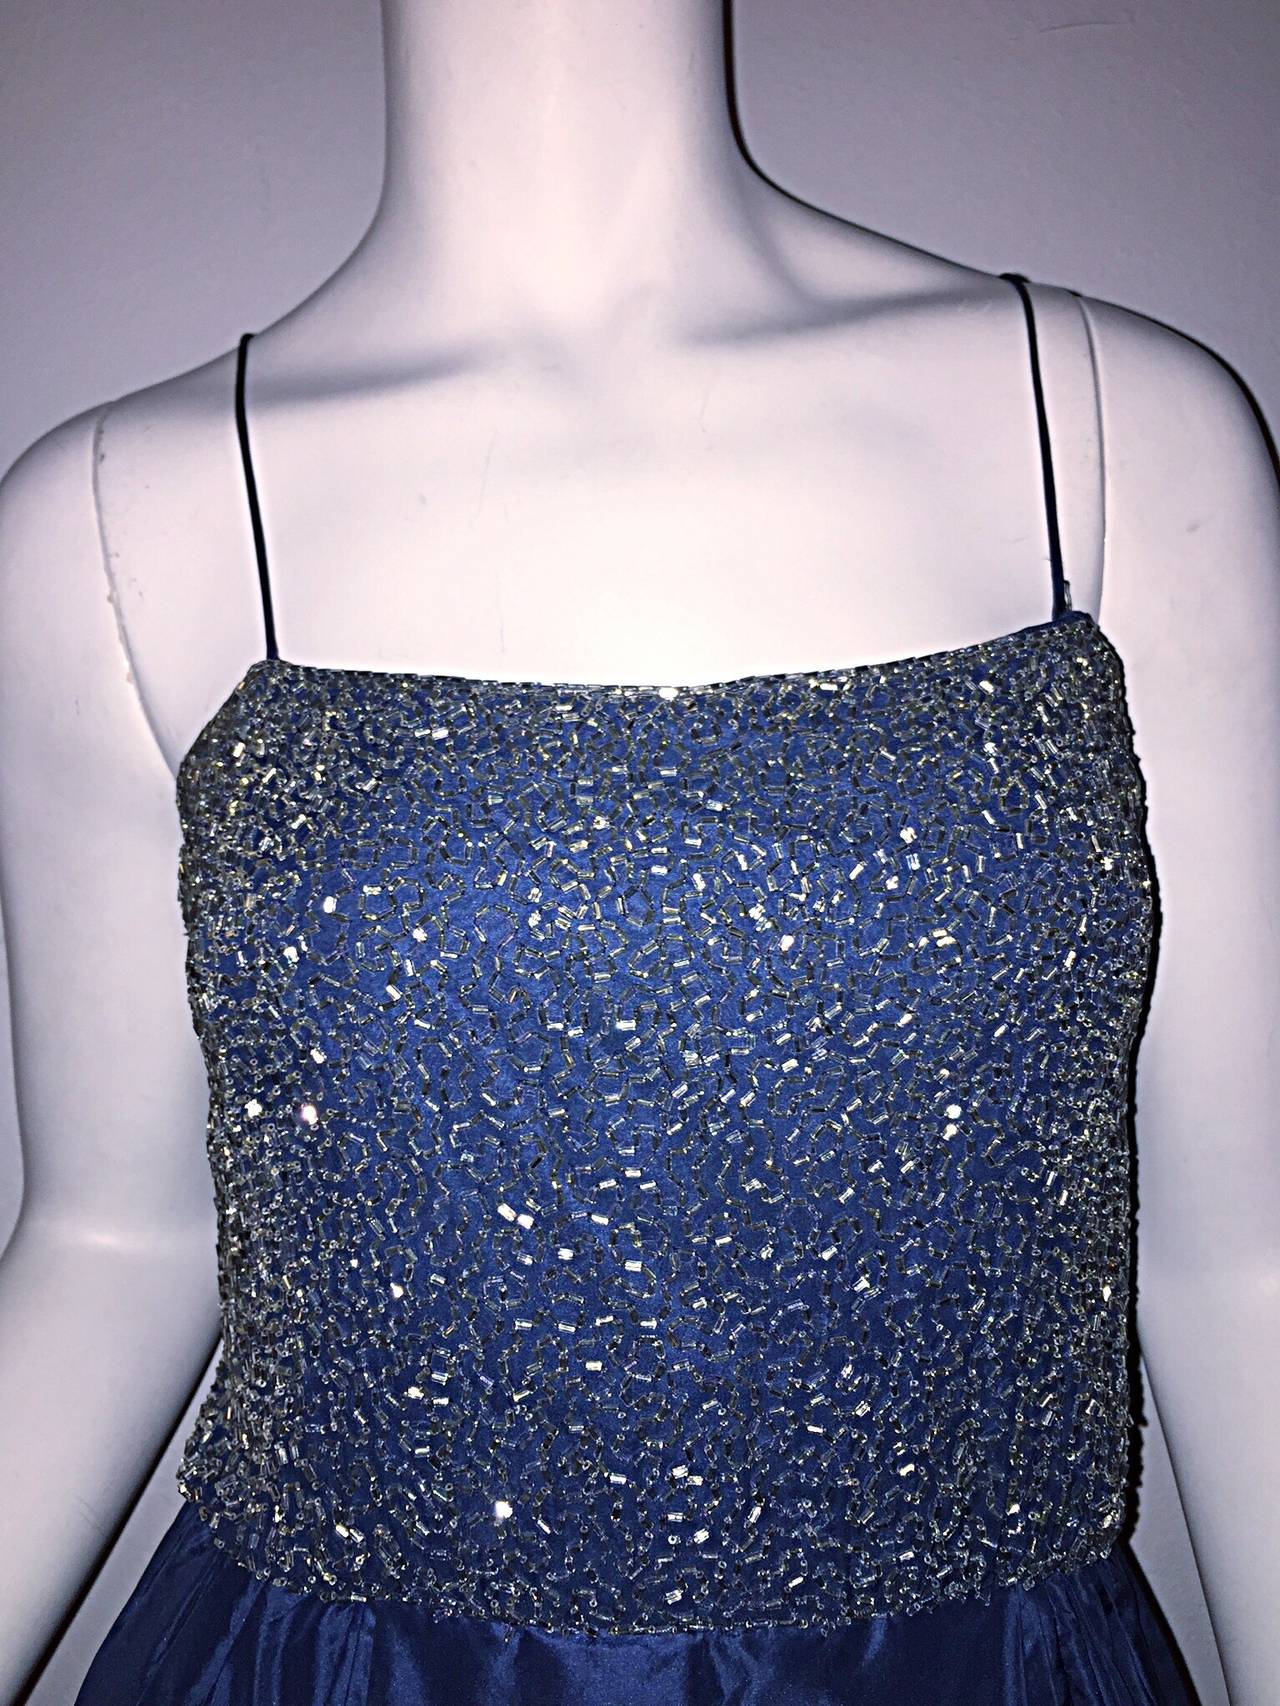 blue taffeta gown